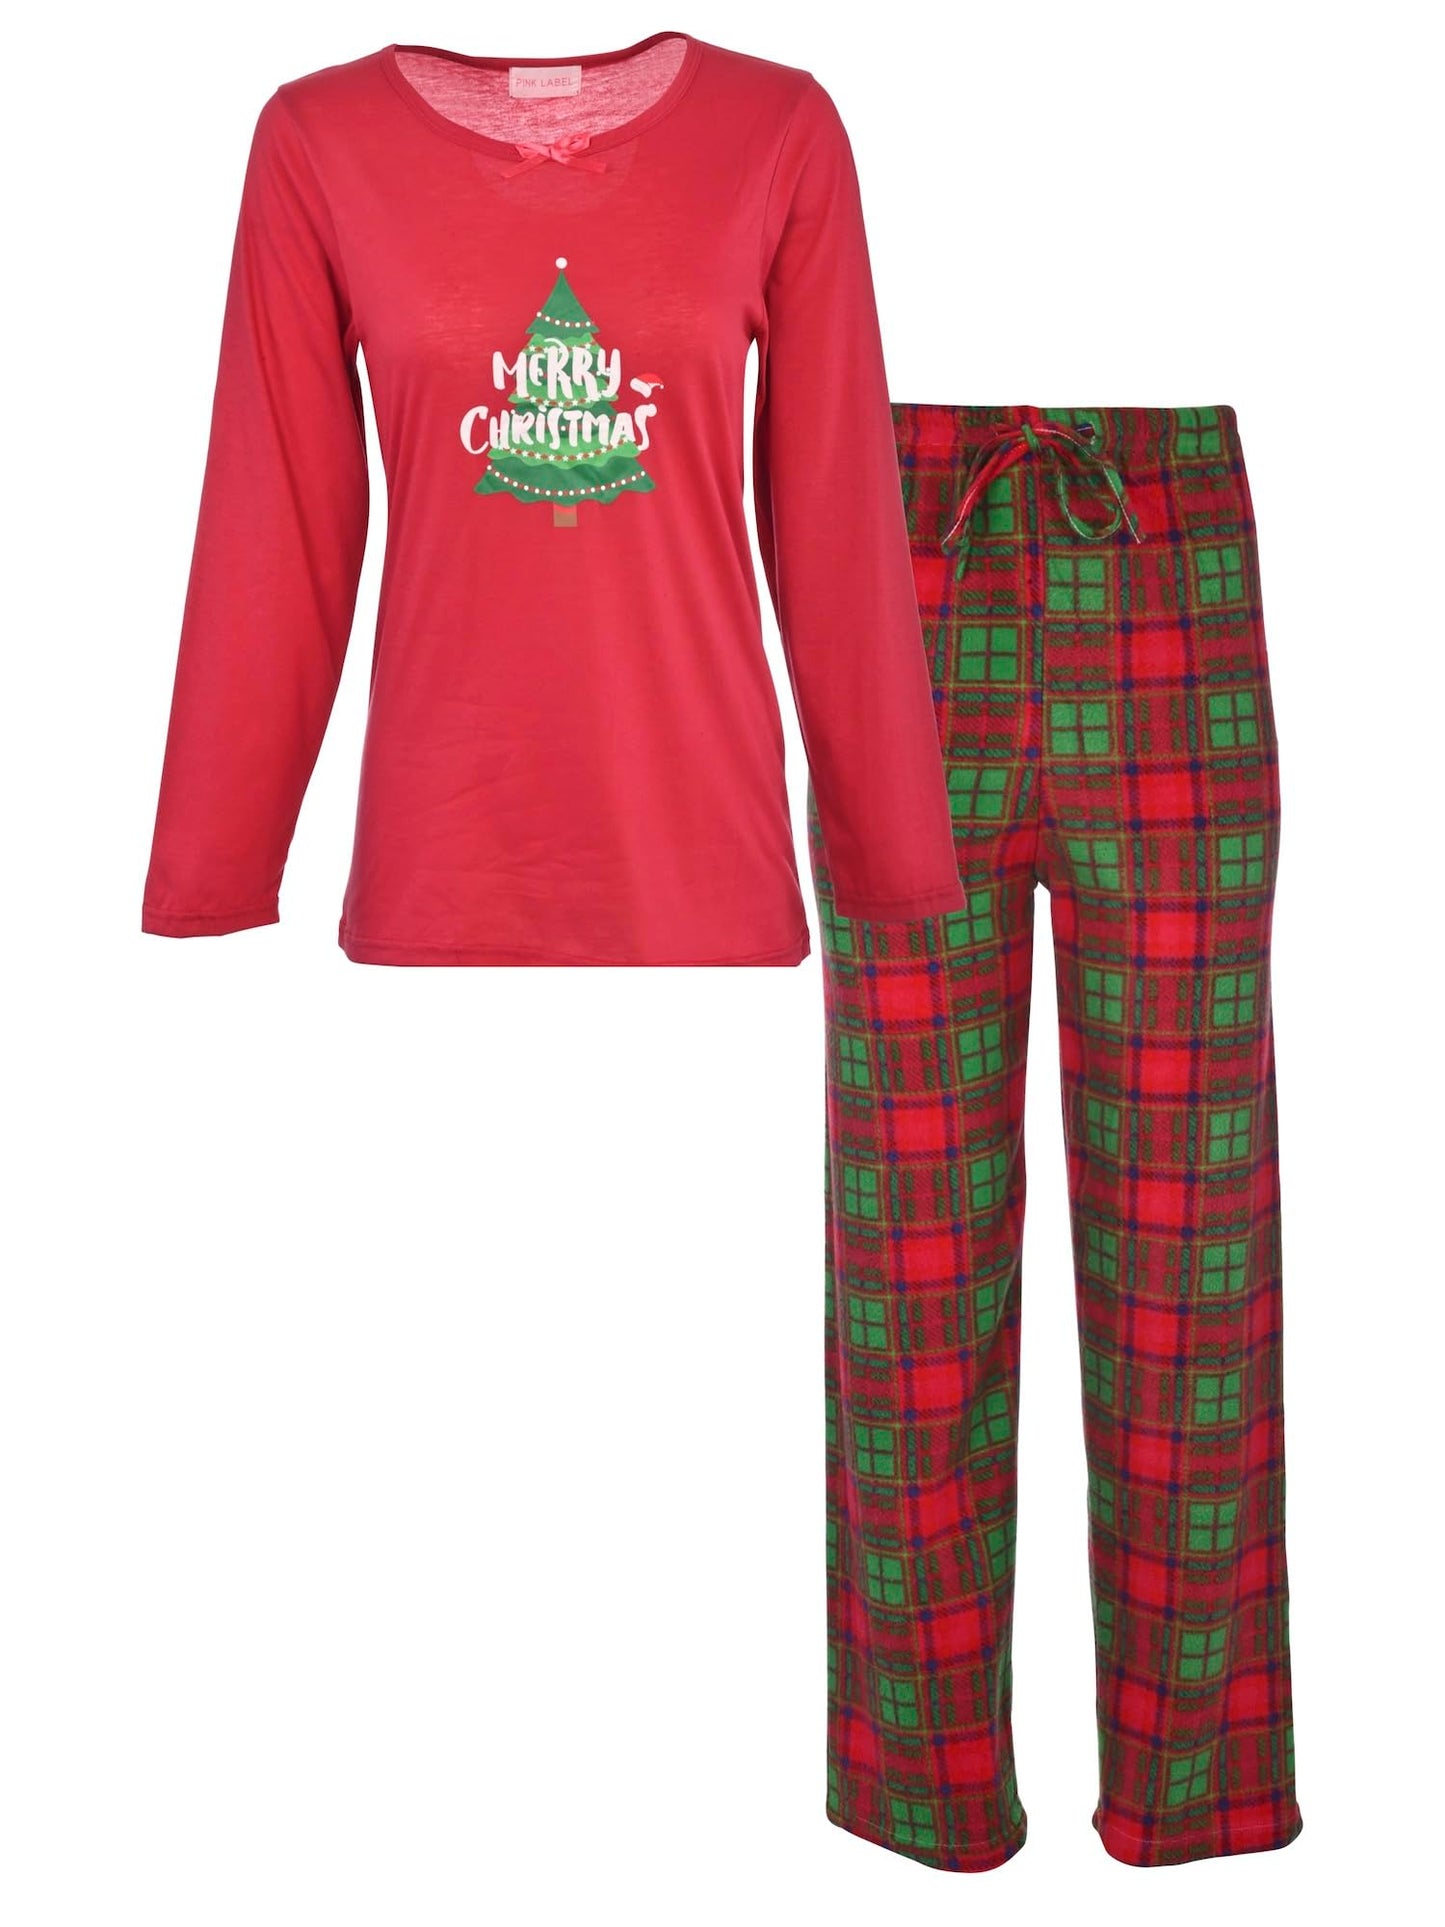 JEFFRICO Womens Christmas Pajamas For Women Long Sleeve Pajamas Top and Pants Two Piece Set Sleepwear Soft Pajamas